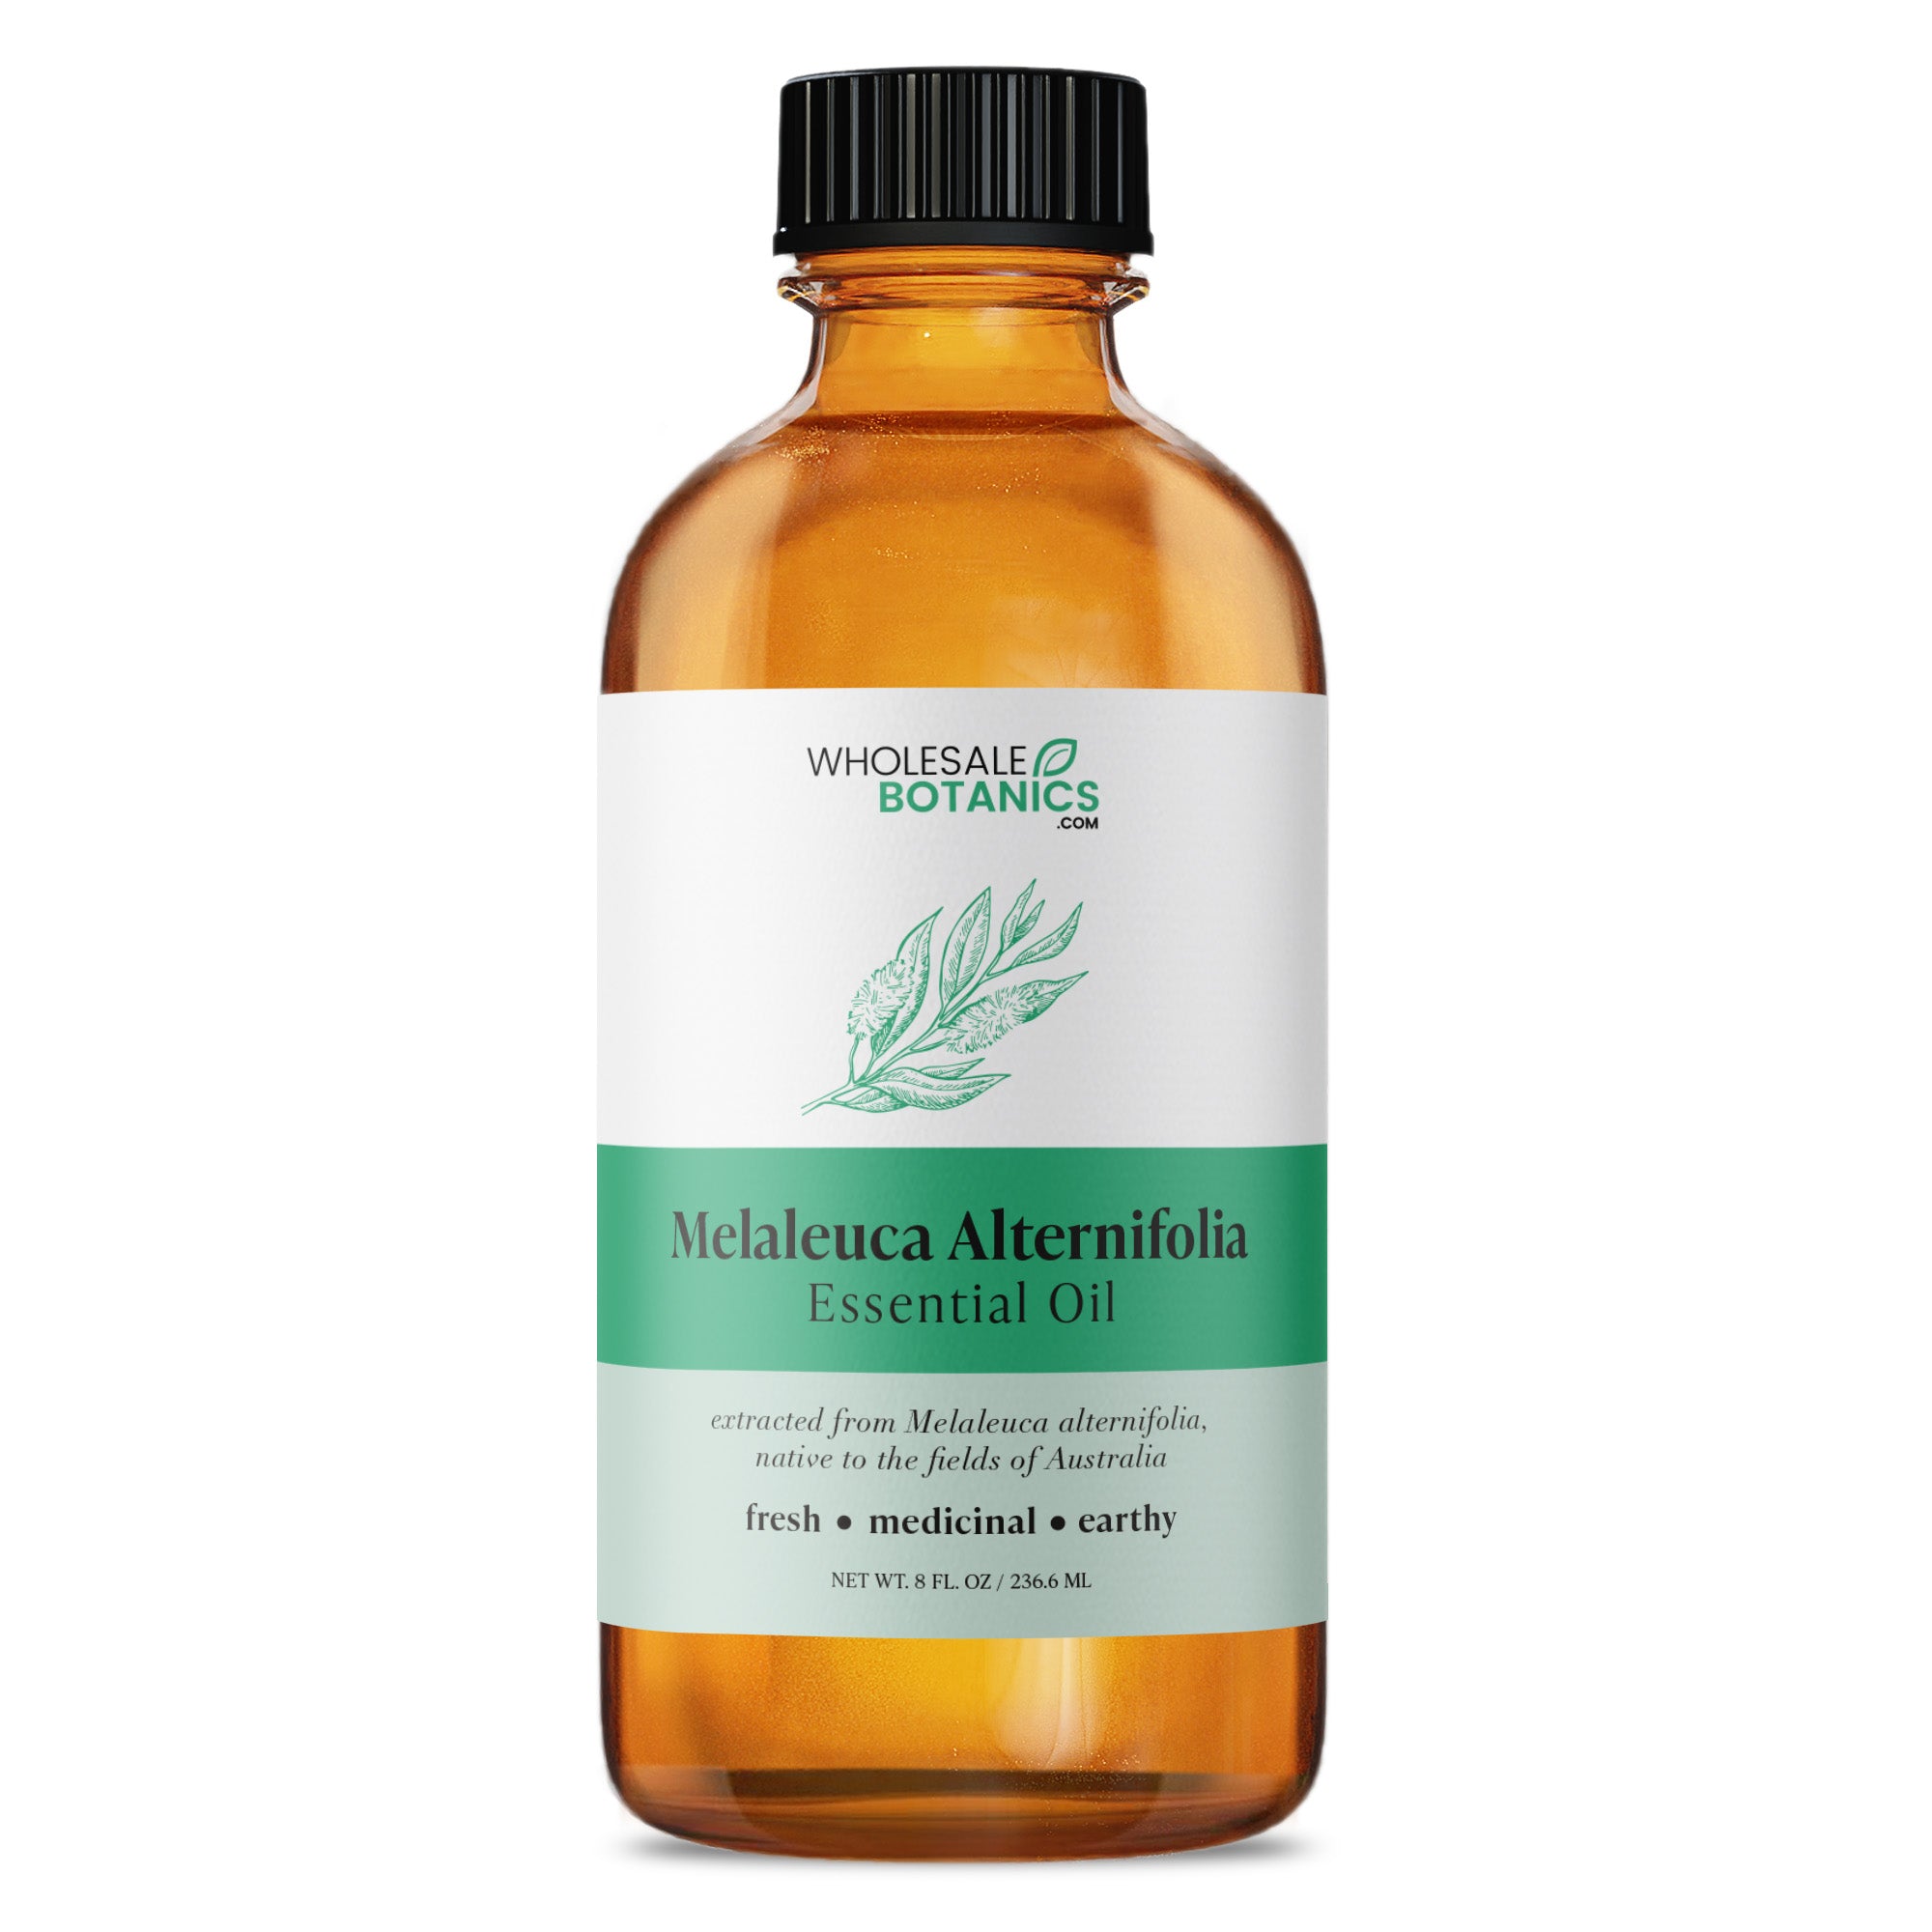 Melaleuca Alternifolia Essential Oil